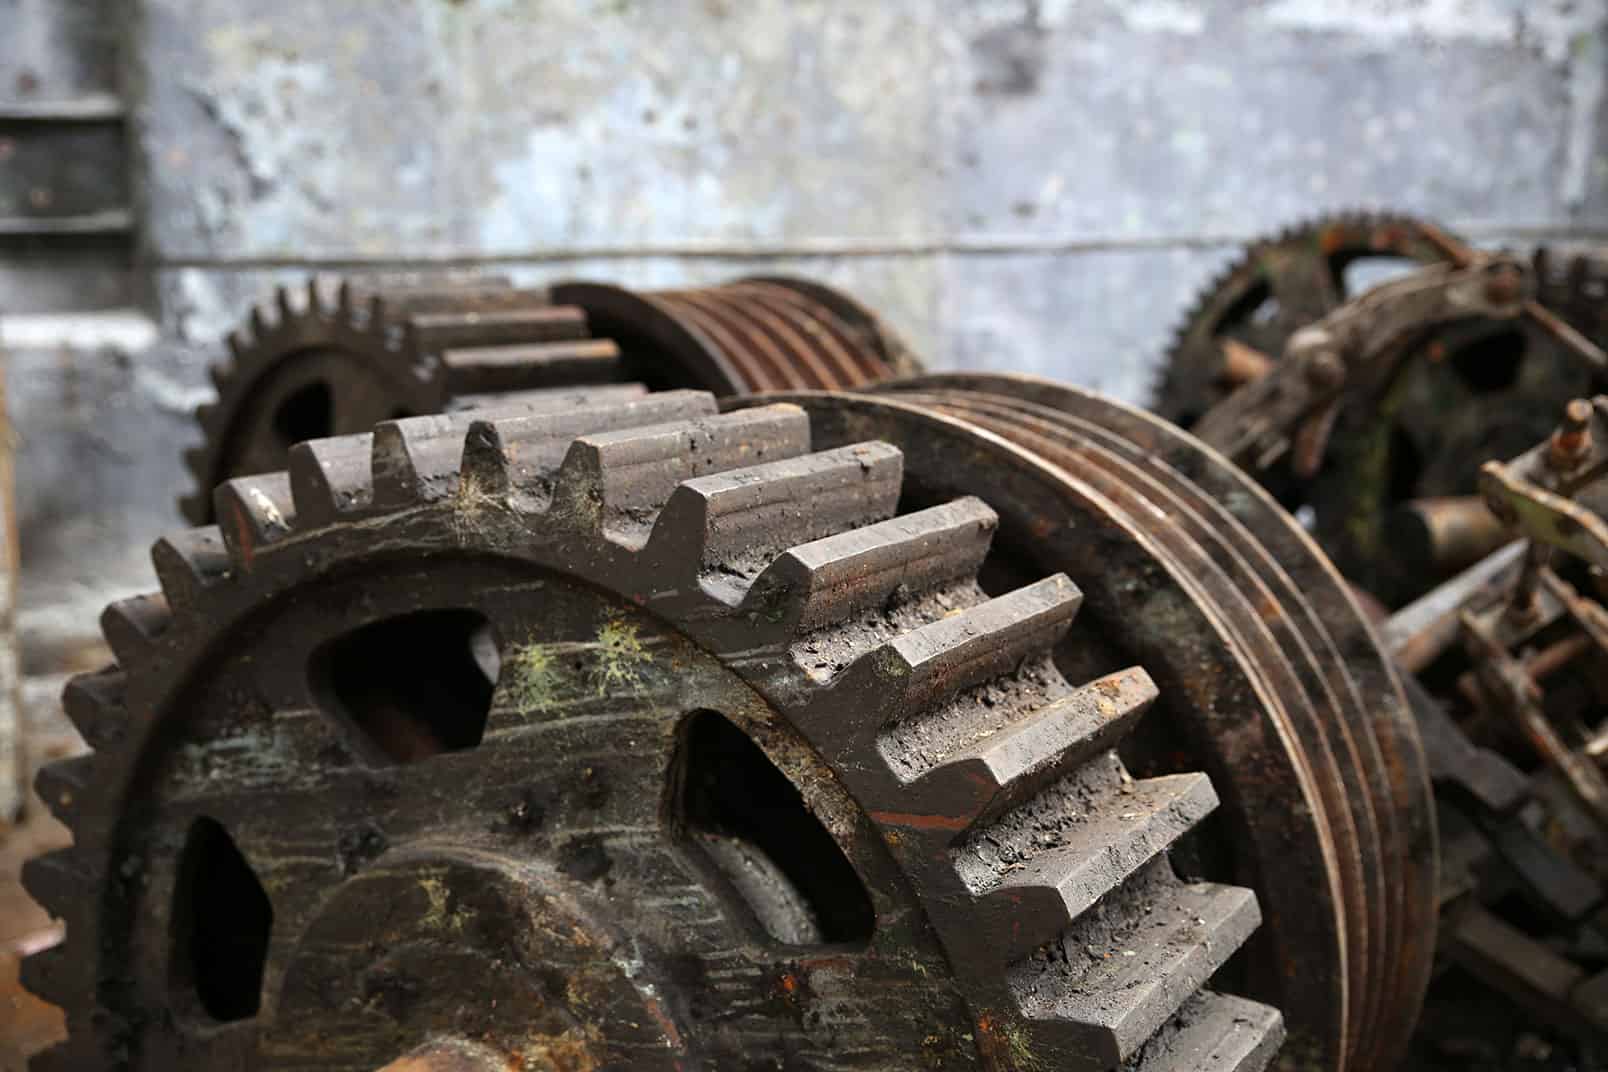 gears in disrepair